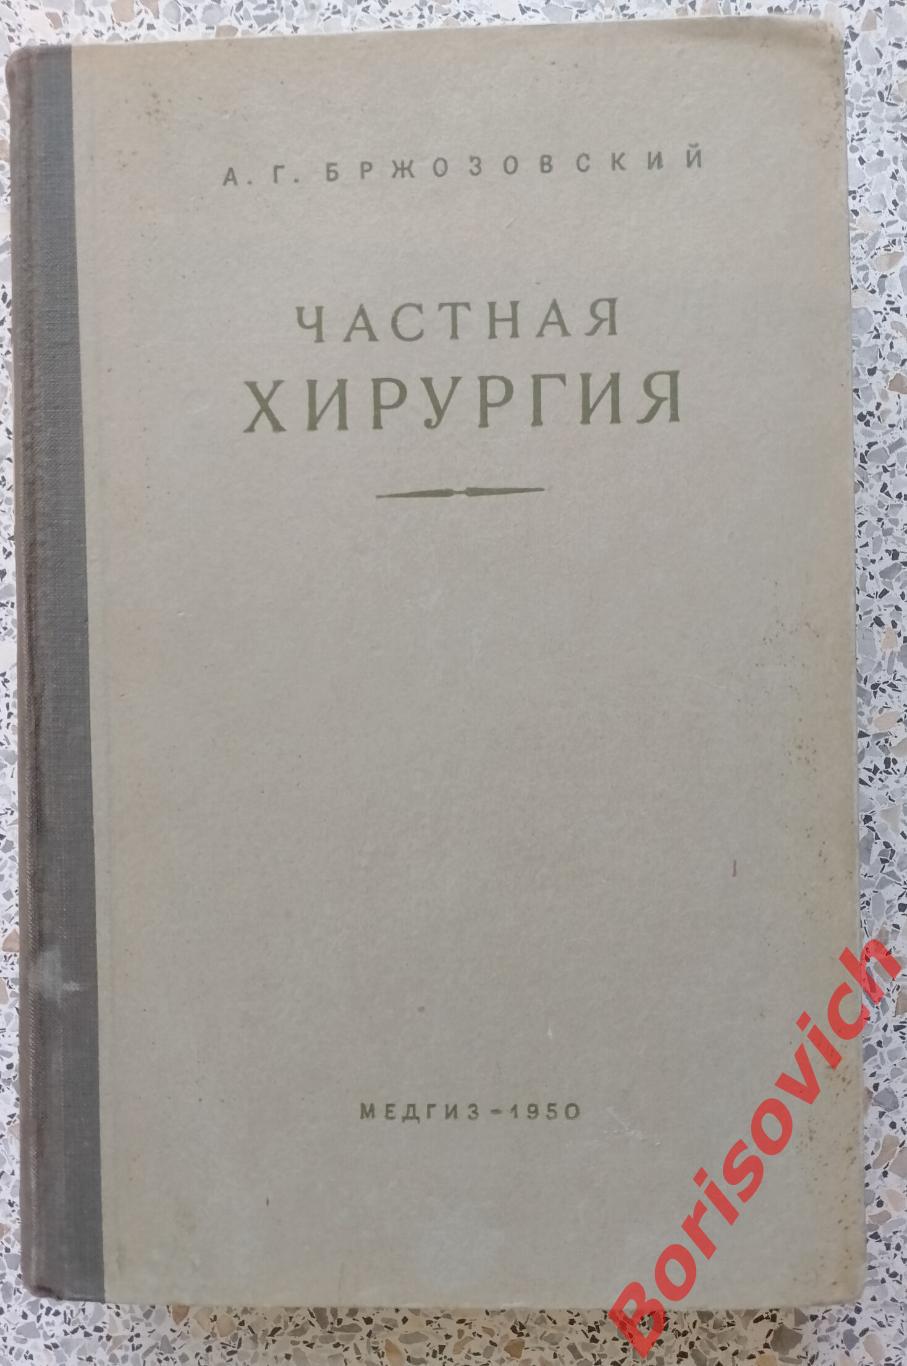 А. Г. Бржозовский ЧАСТНАЯ ХИРУРГИЯ МЕДГИЗ 1950 г 726 страниц